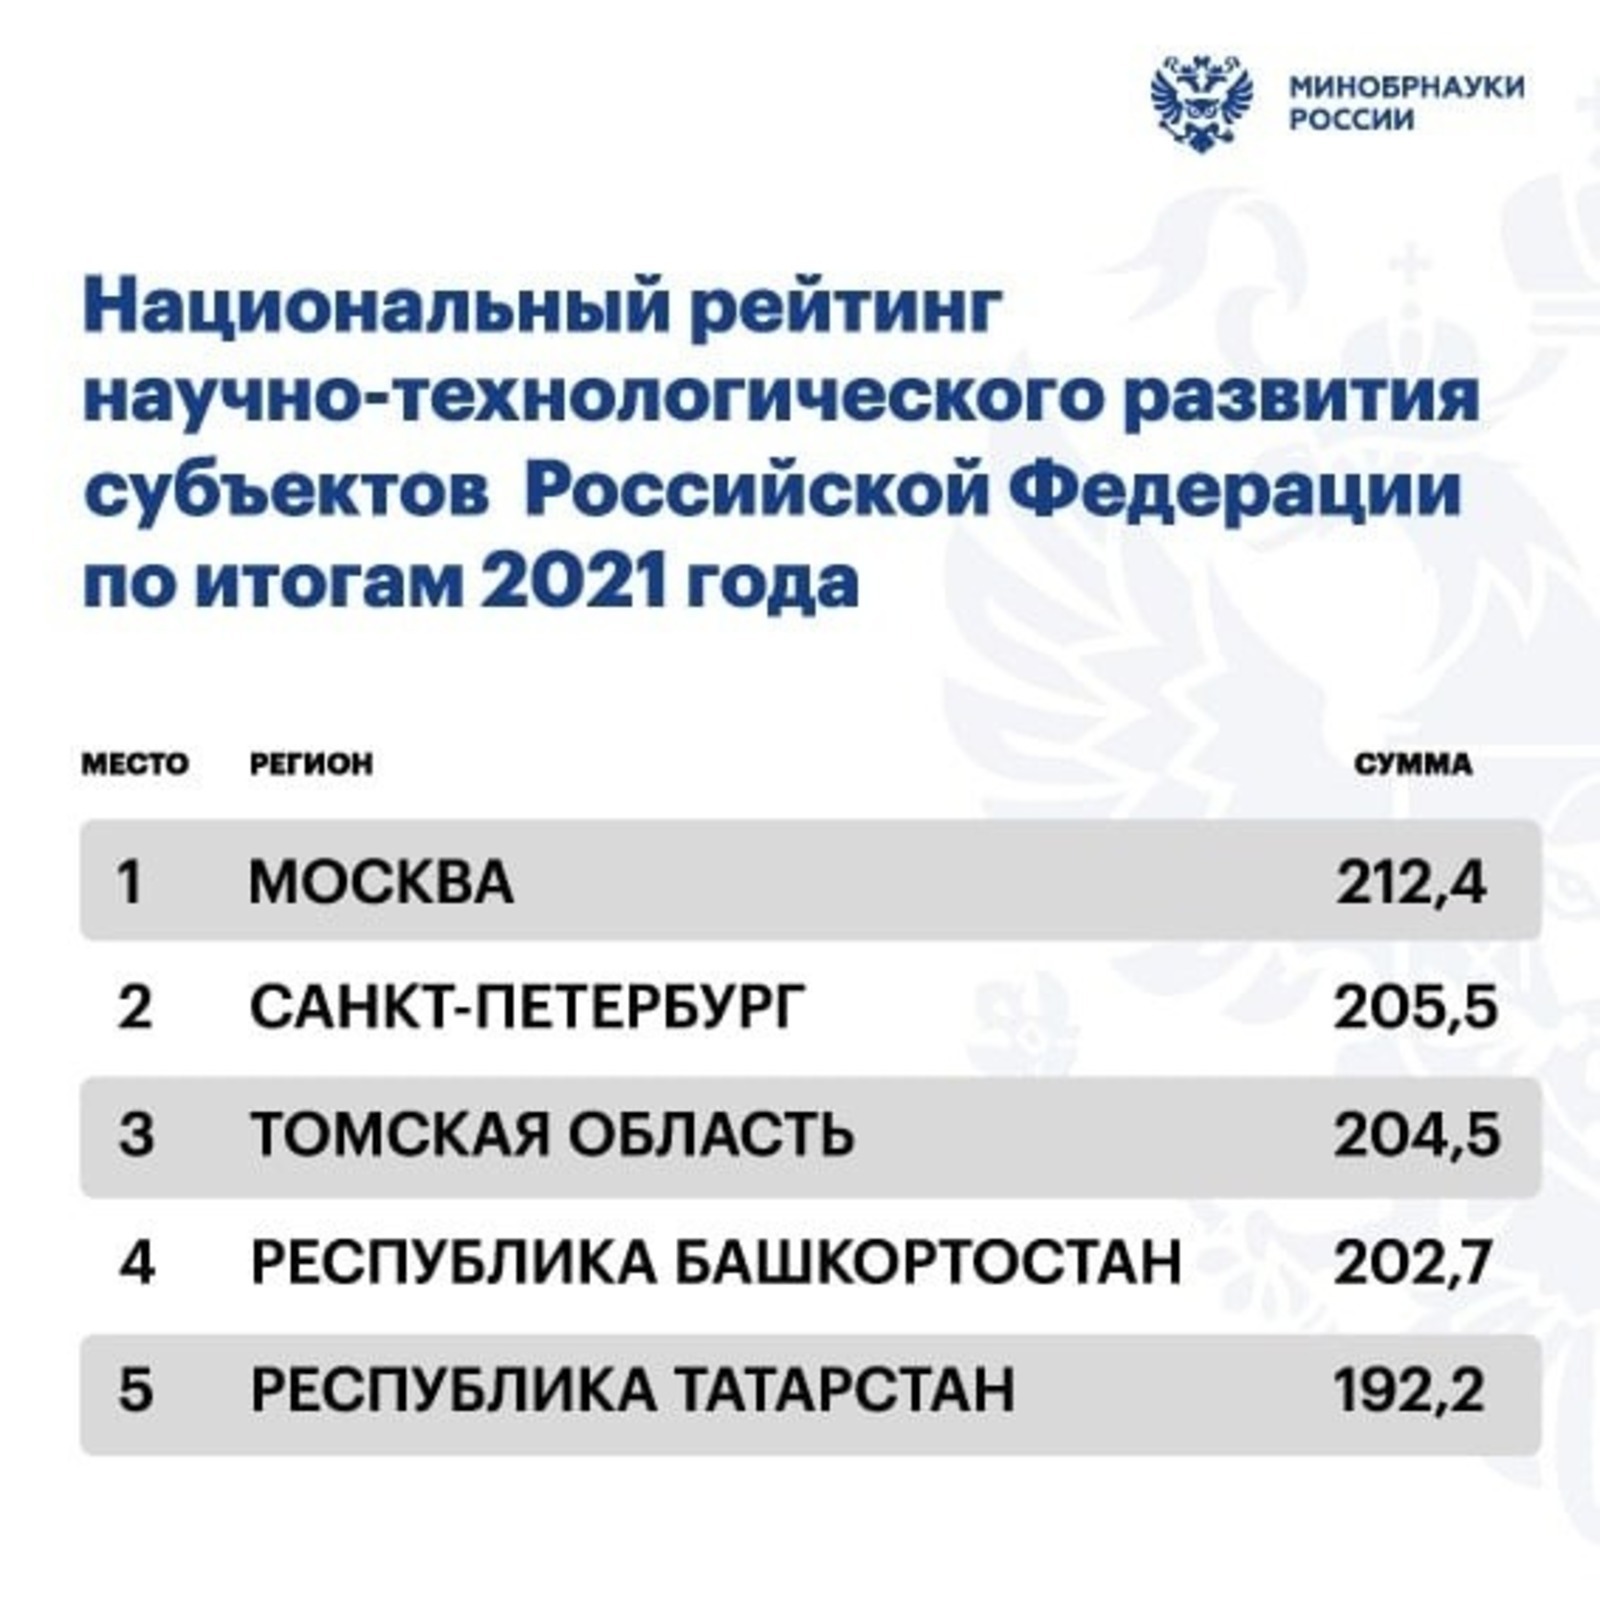 Башкортостан занял четвертое место в I Национальном рейтинге научно-технологического развития регионов